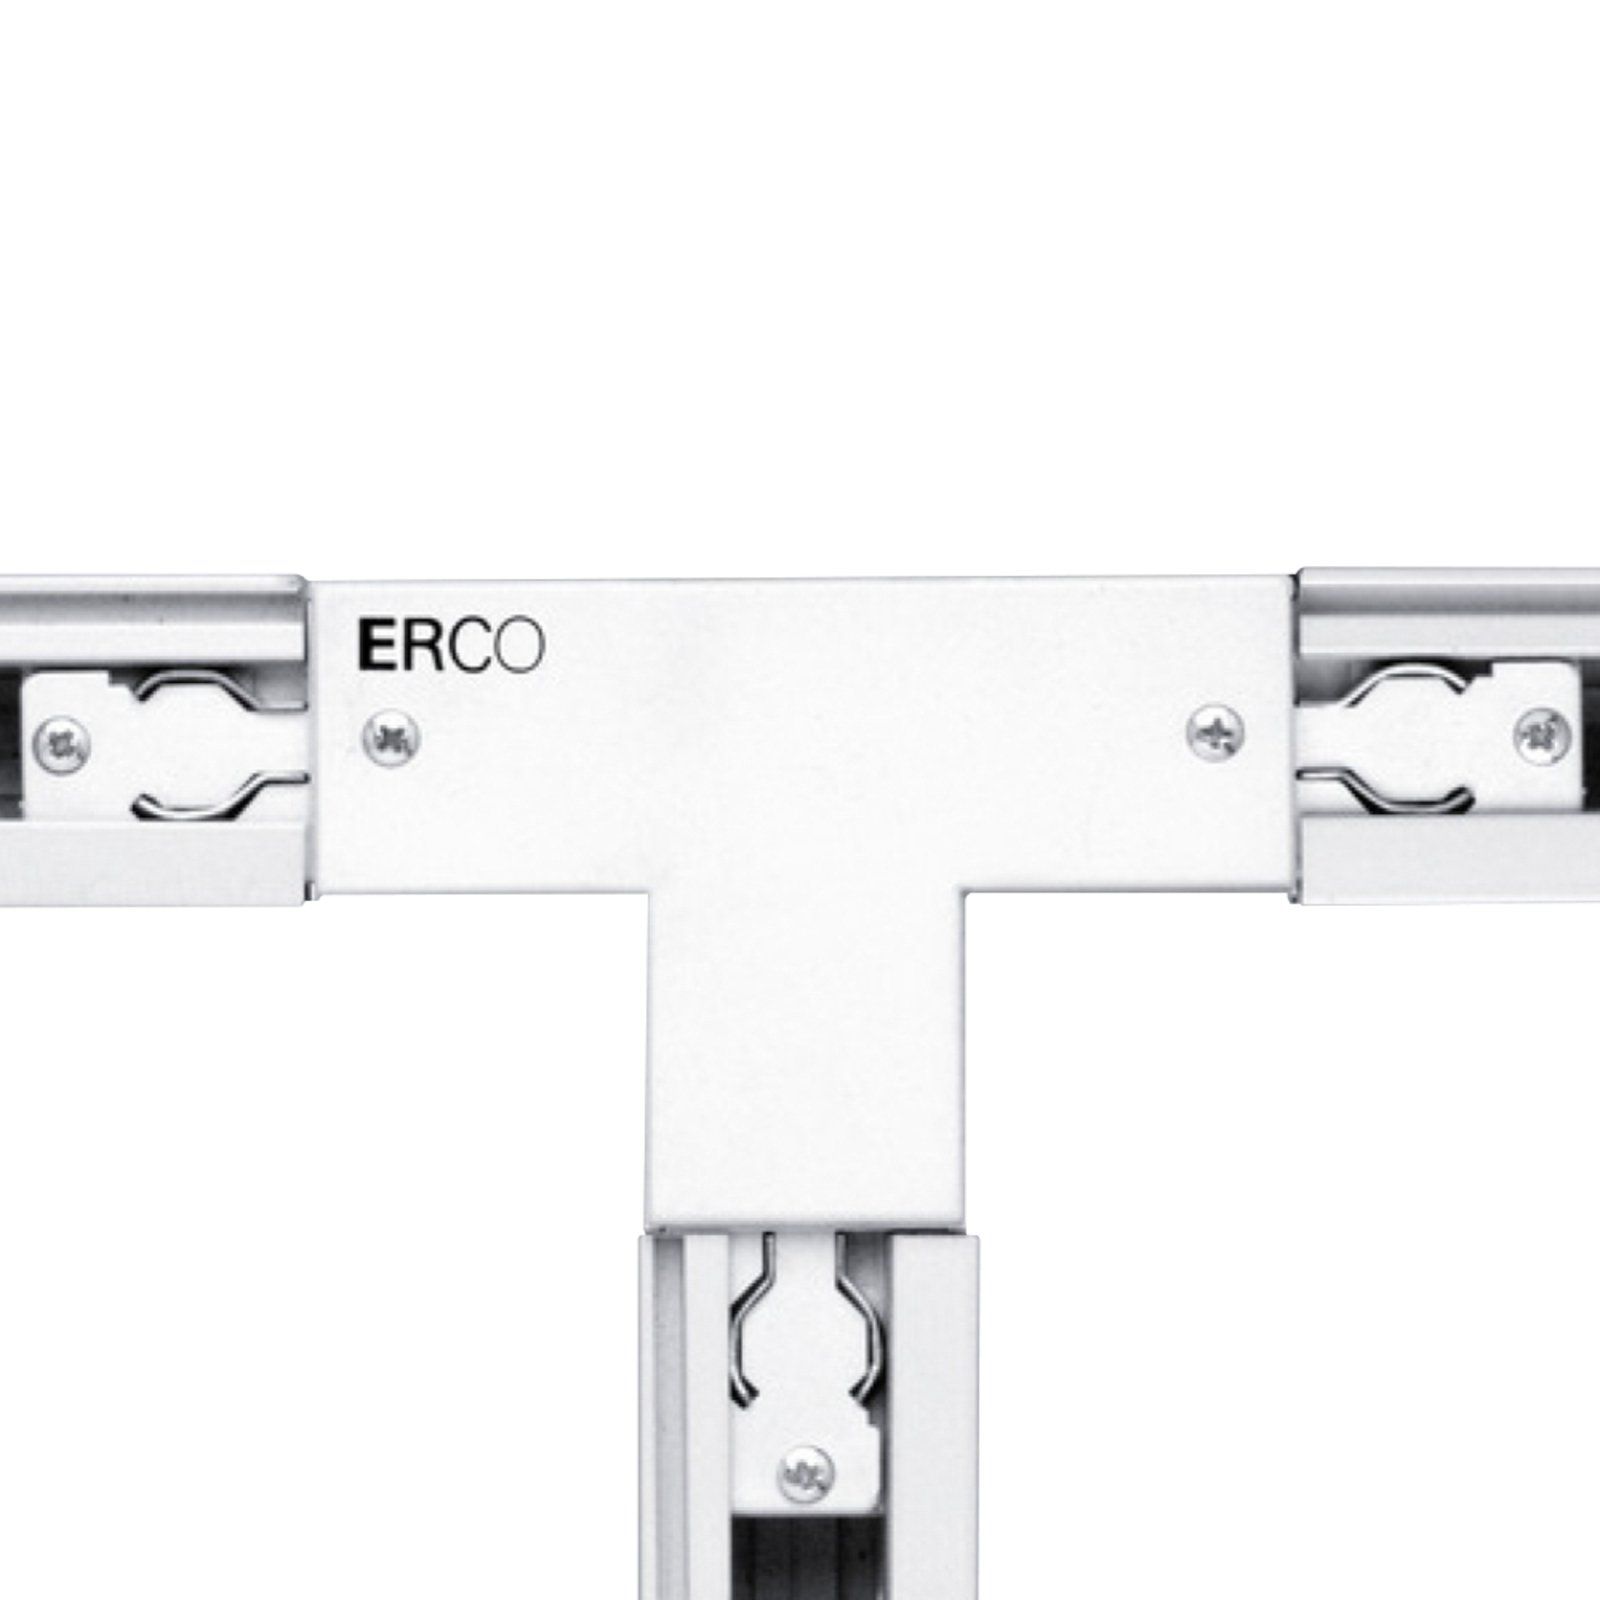 ERCO 3-faset T-kontakt jord venstre, hvit